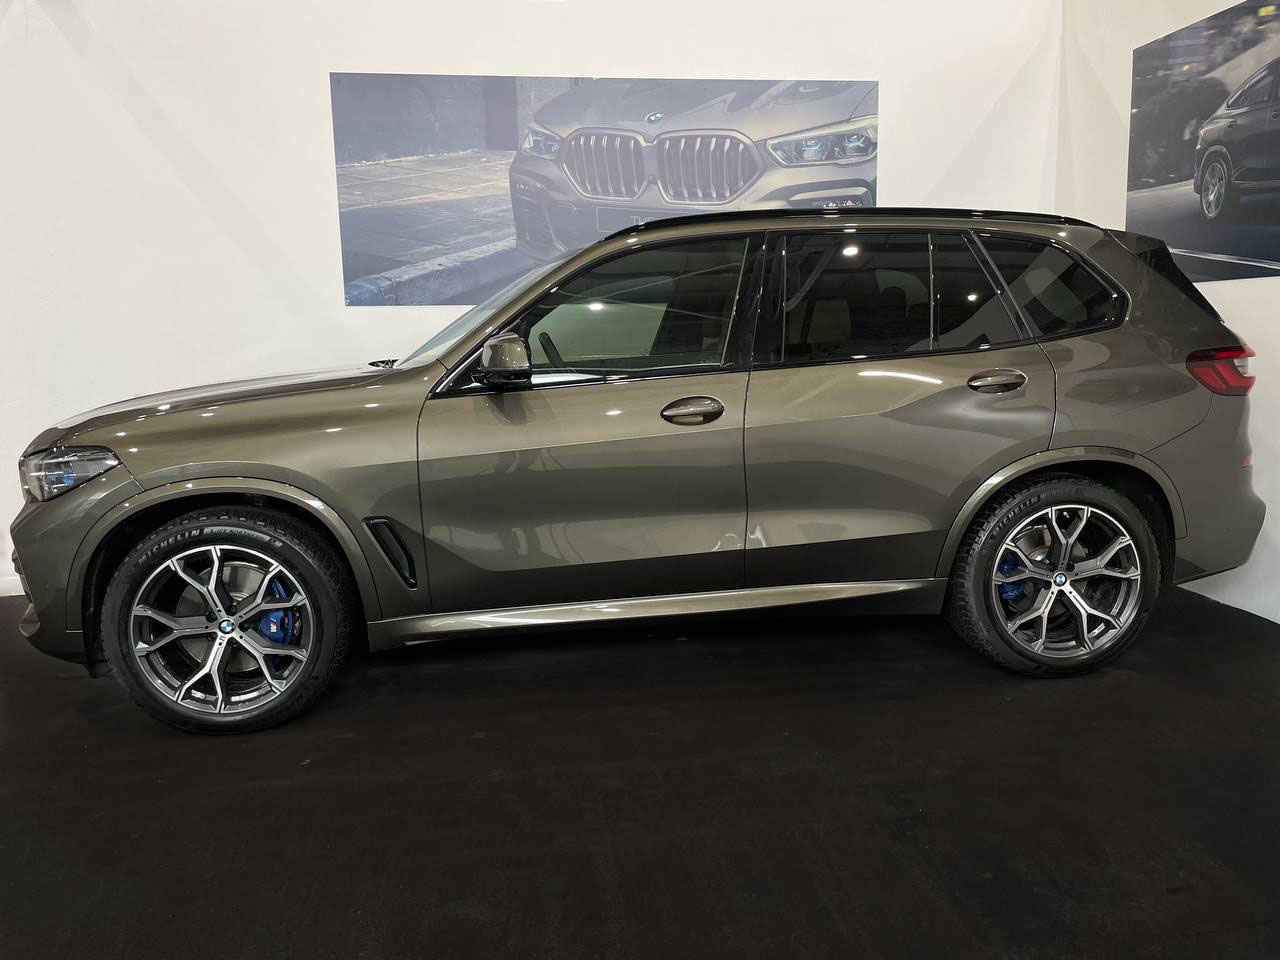 BMW X5, 2021 г.